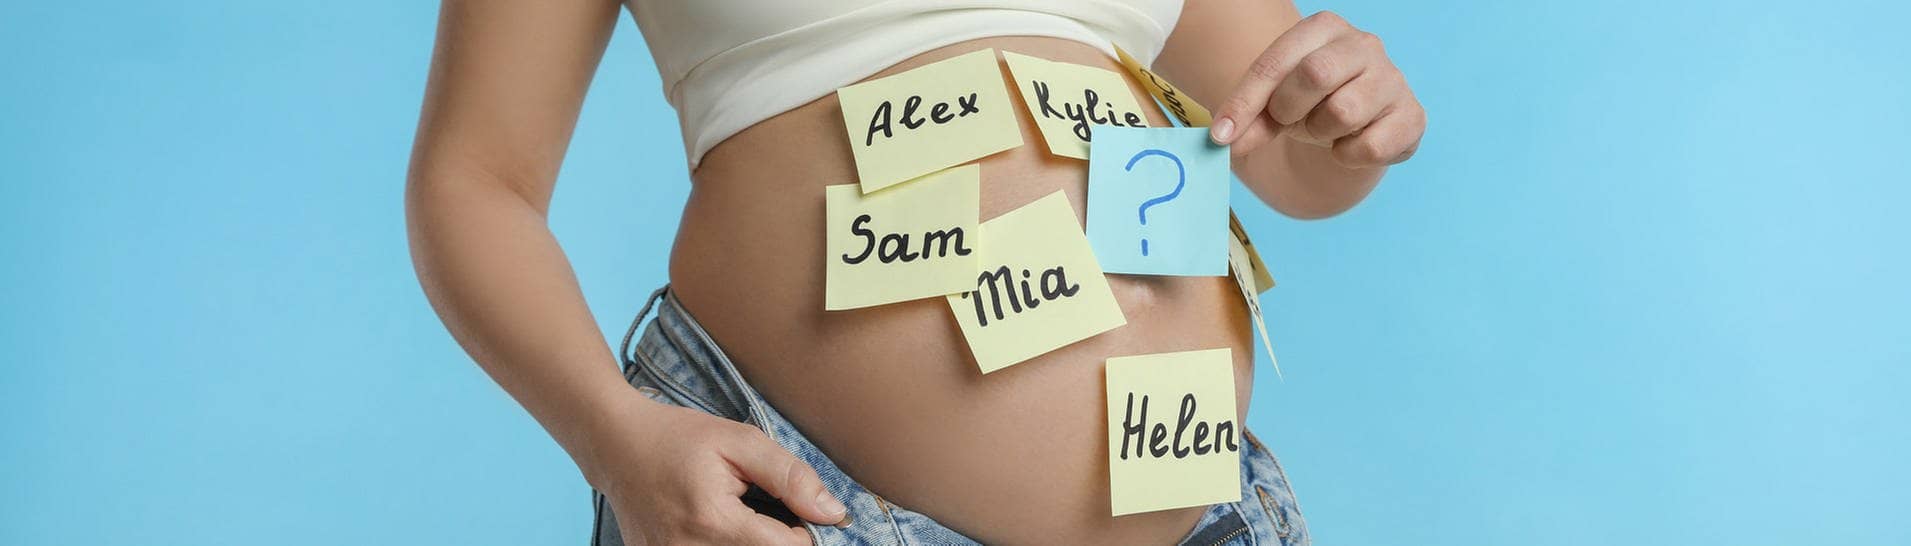 Auf den Bauch einer schwangeren Frau sind bunte Zettel mit verschiedenen Vornamen geklebt.